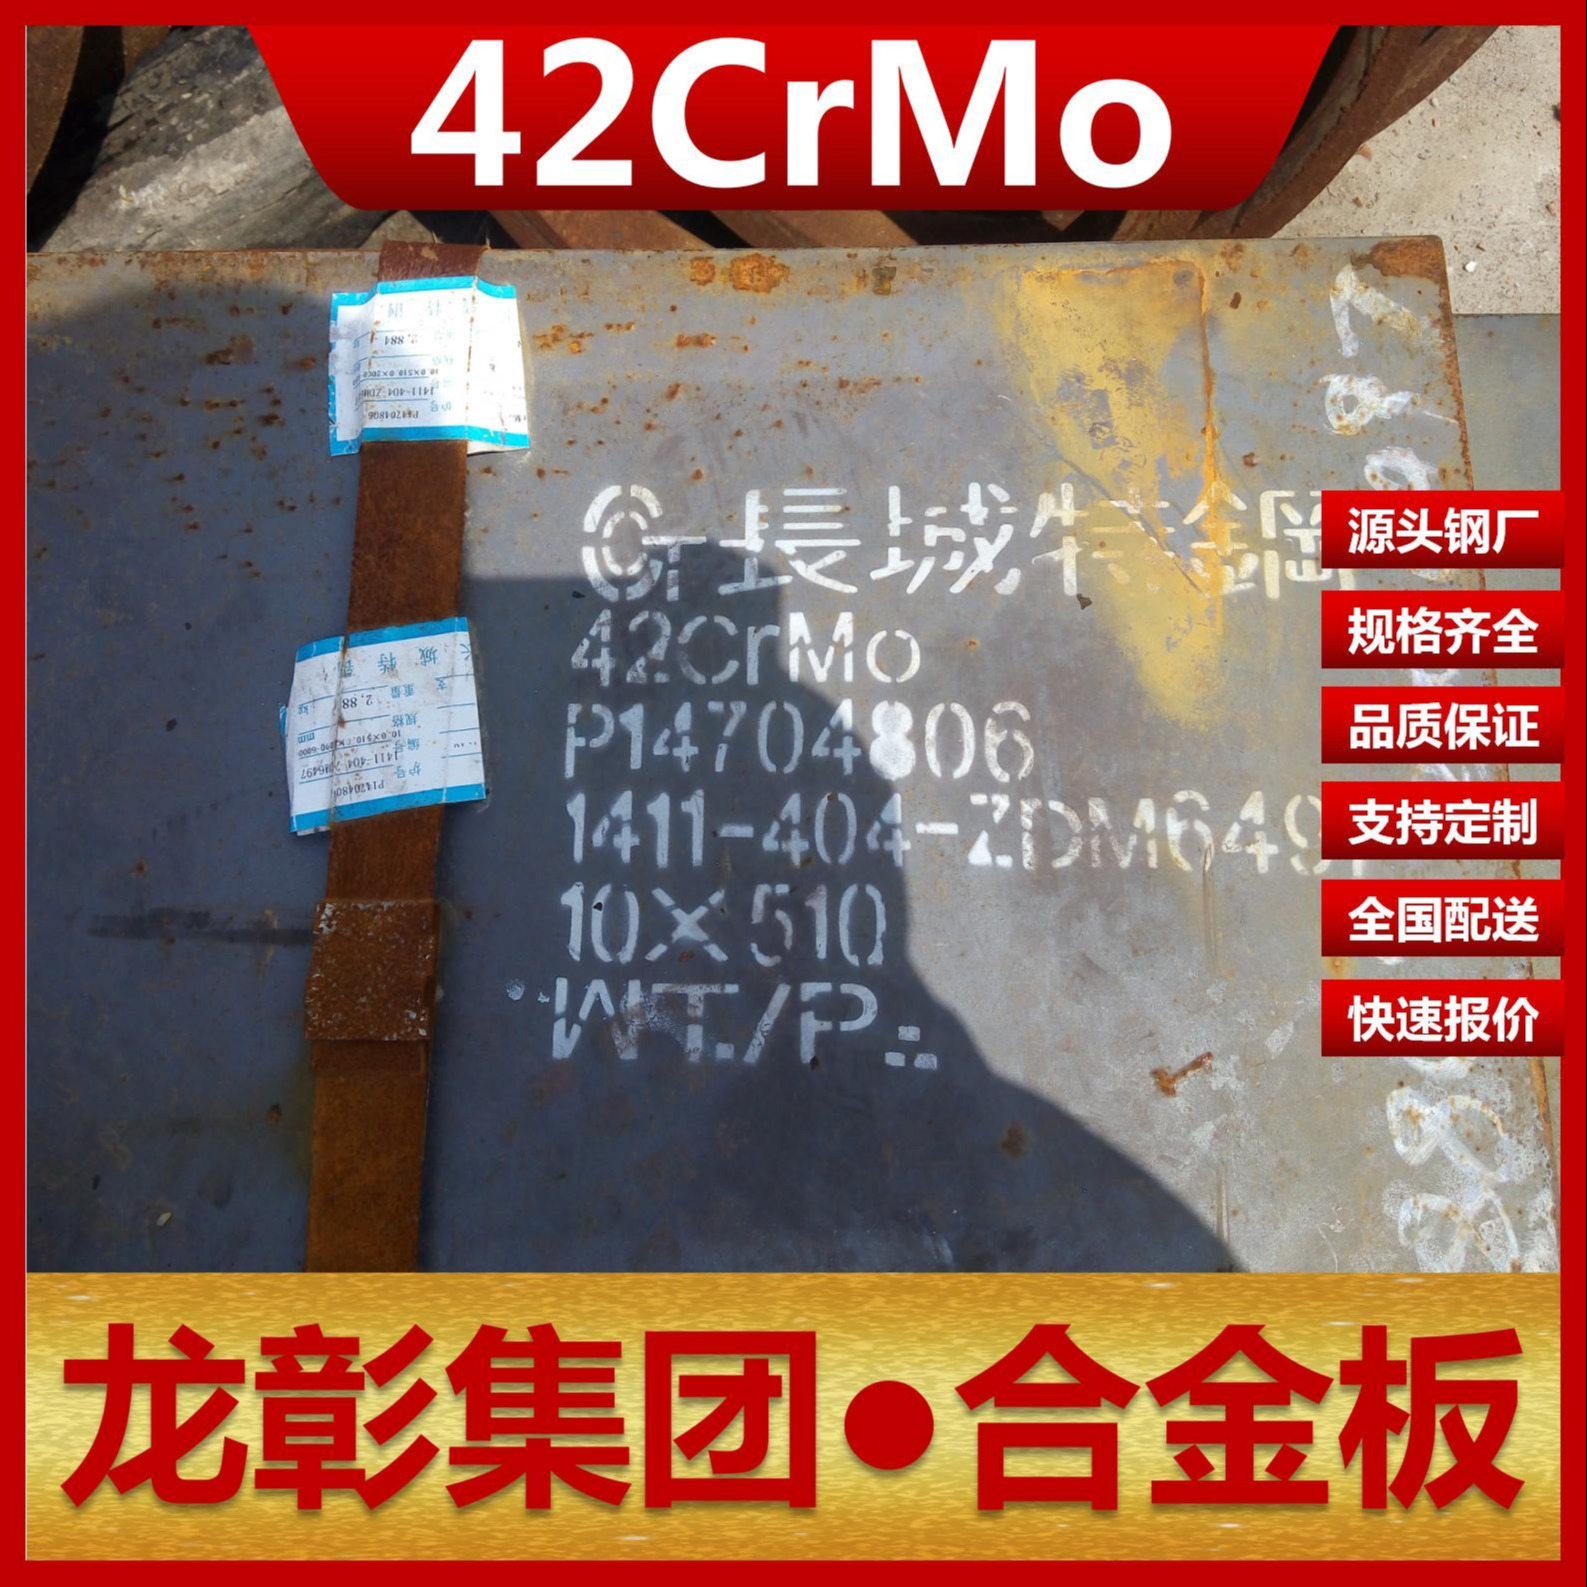 42CrMo钢板现货批零 龙彰集团主营42CrMo合金板卷材可开平分条